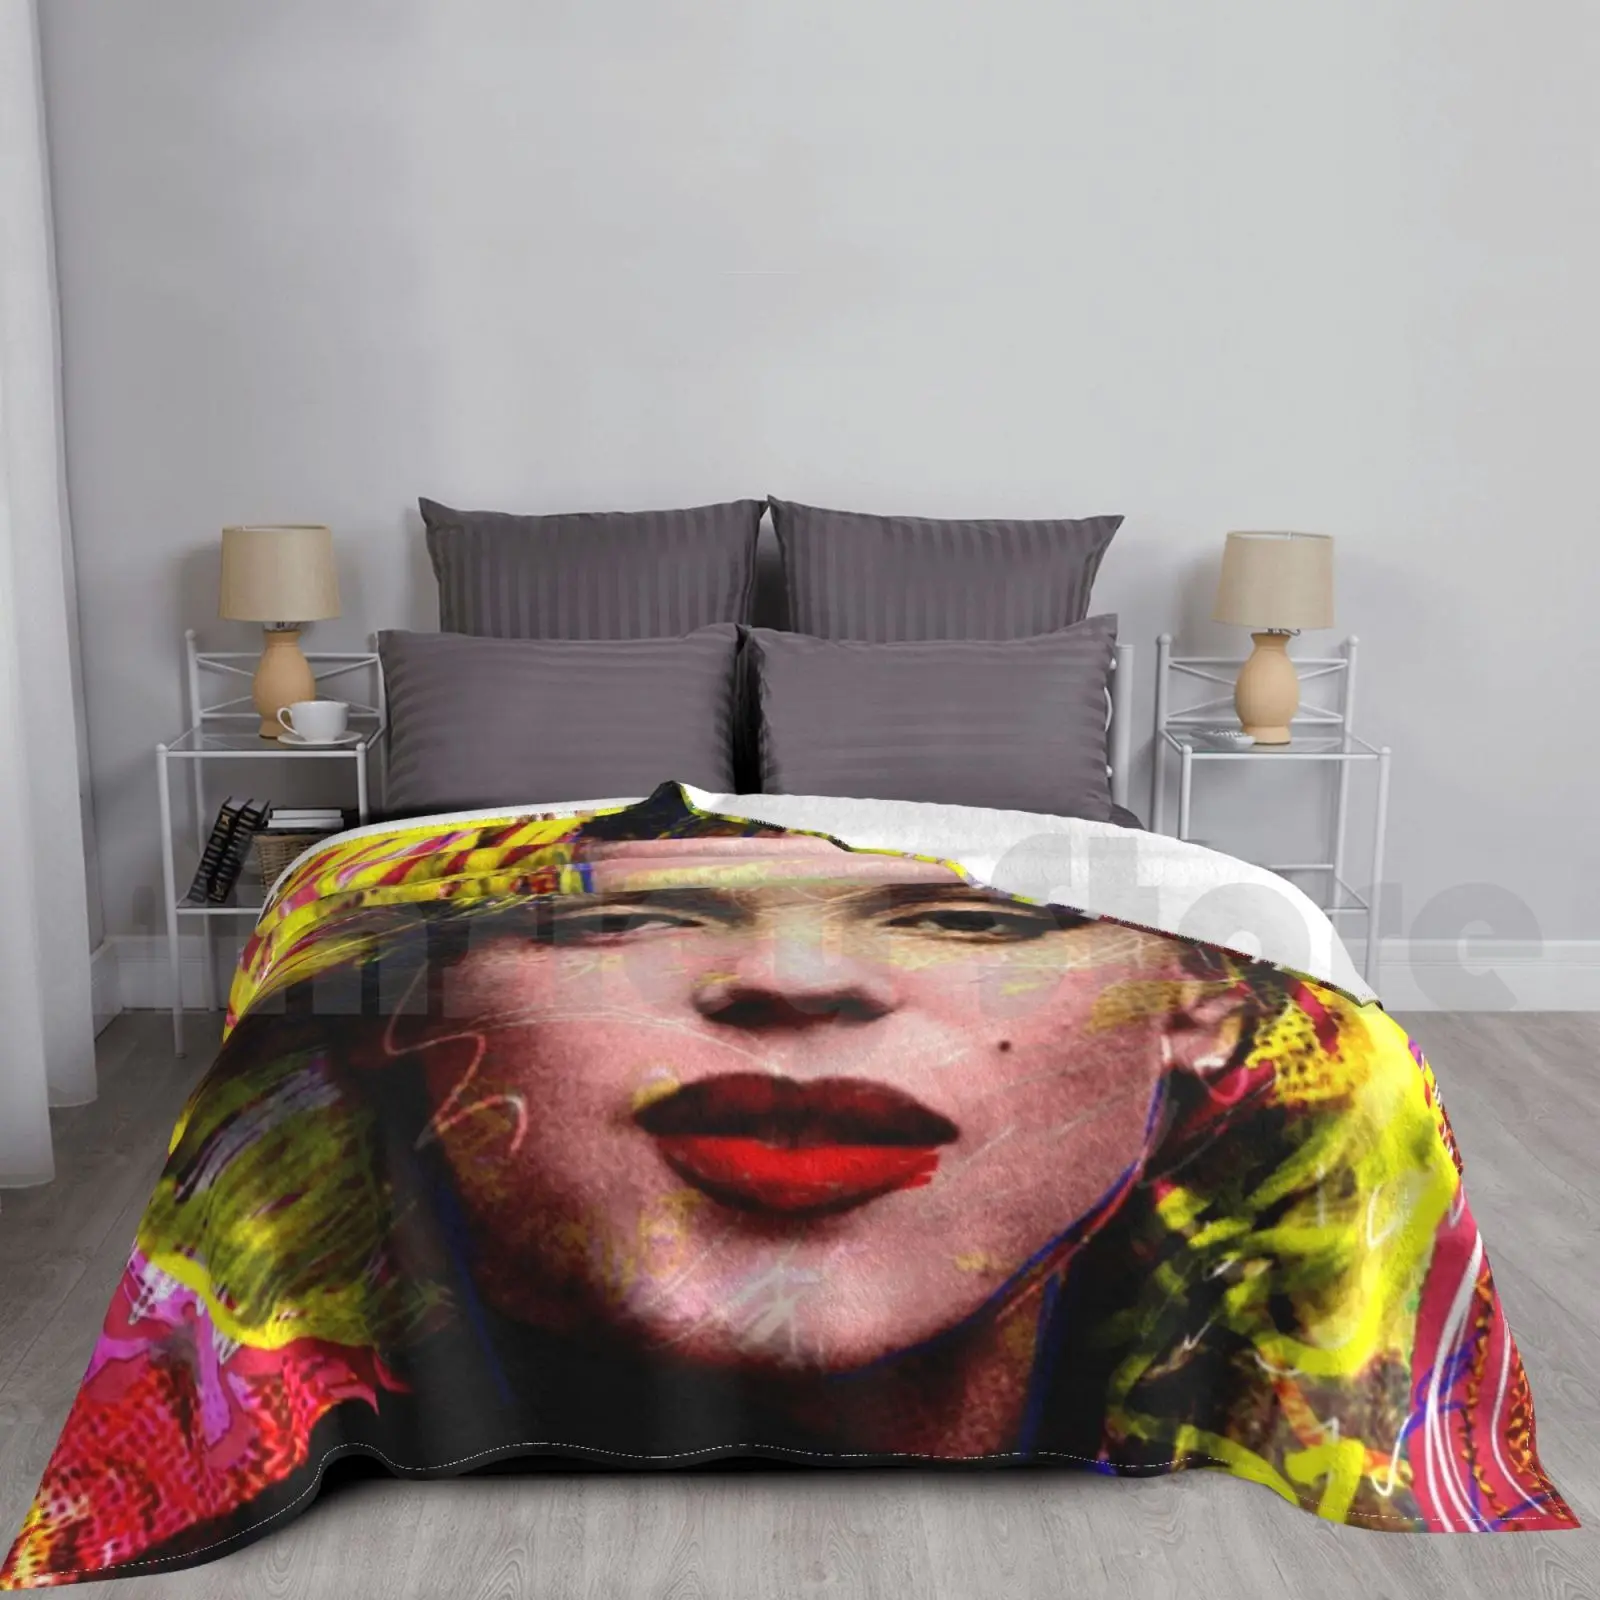 

Одеяло Marilyn Girl Pop Art для дивана, кровати, путешествий, абстрактное современное искусство, лицо Мэрилин Монро, джинсовая норма